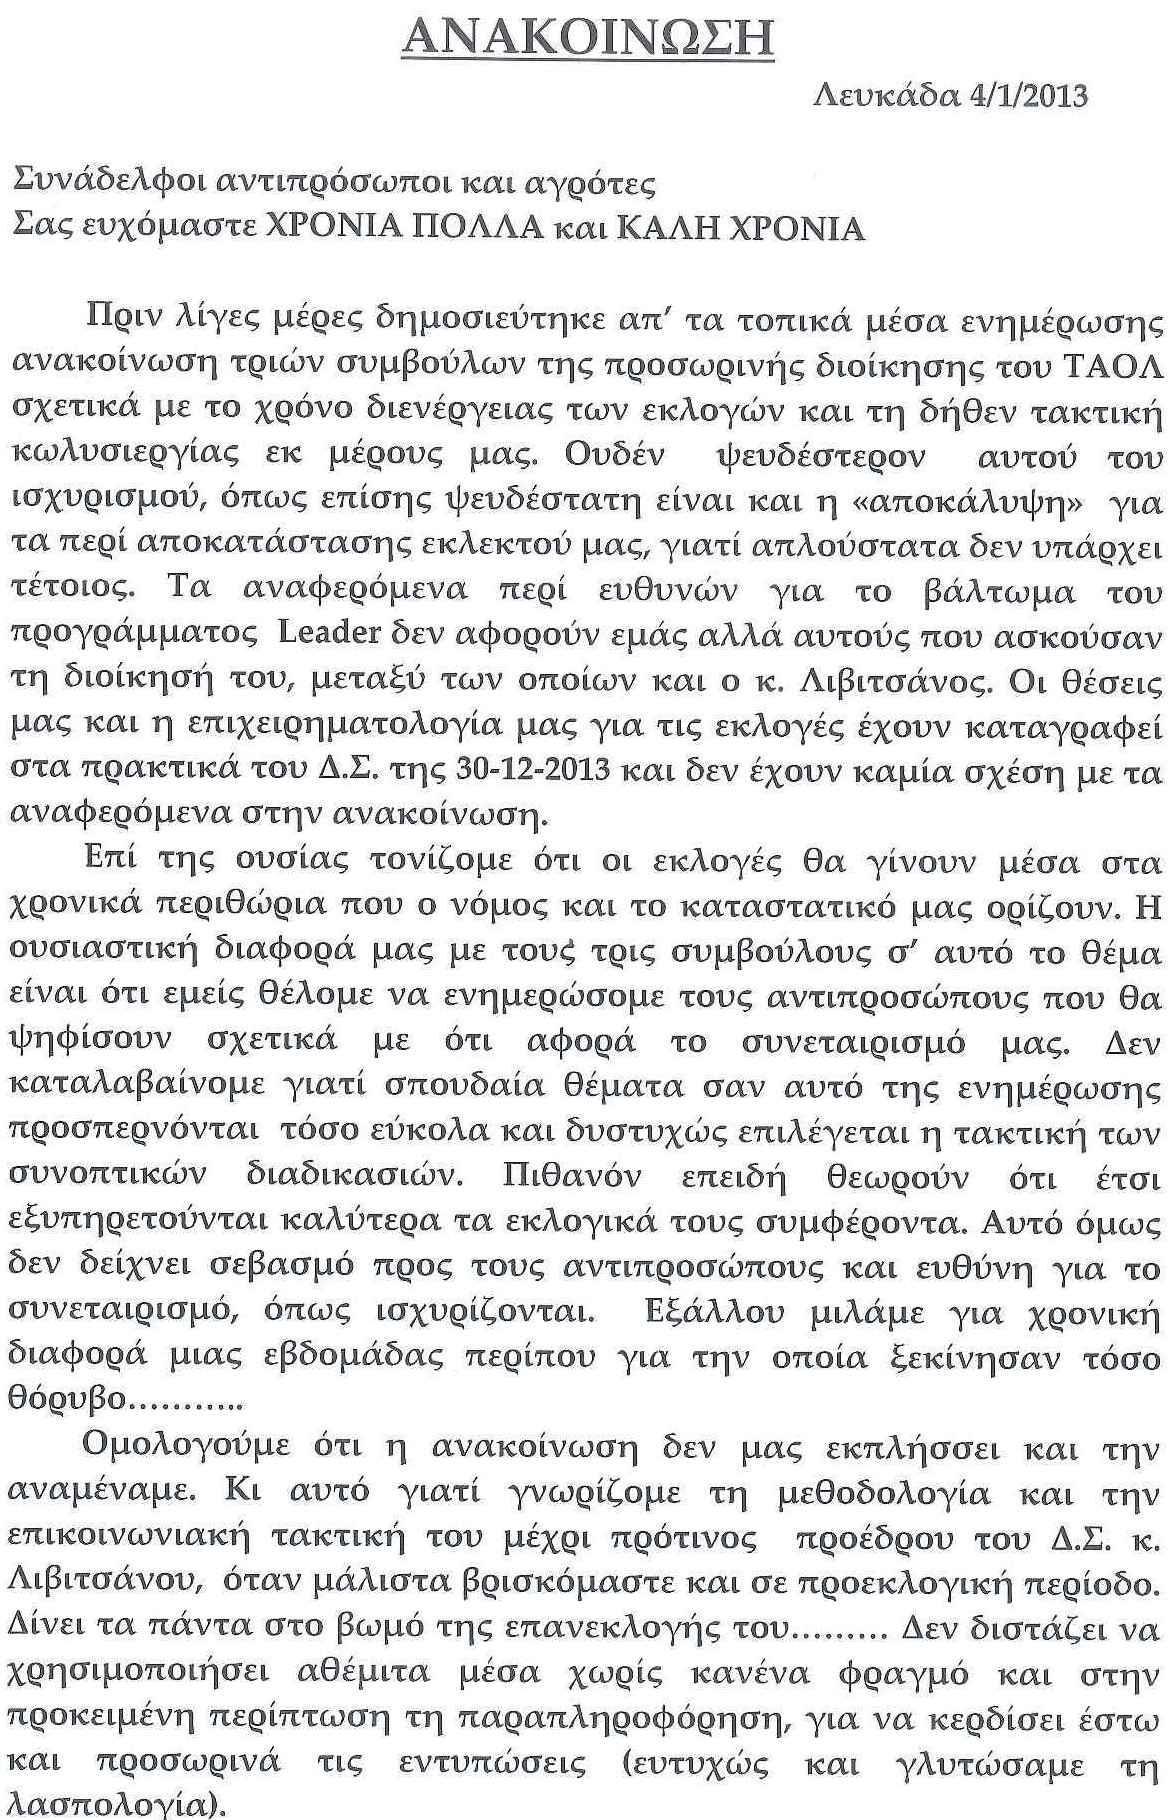 ANAKOINOSI PROSORINIS DIOIKISIS TAOL Page 1